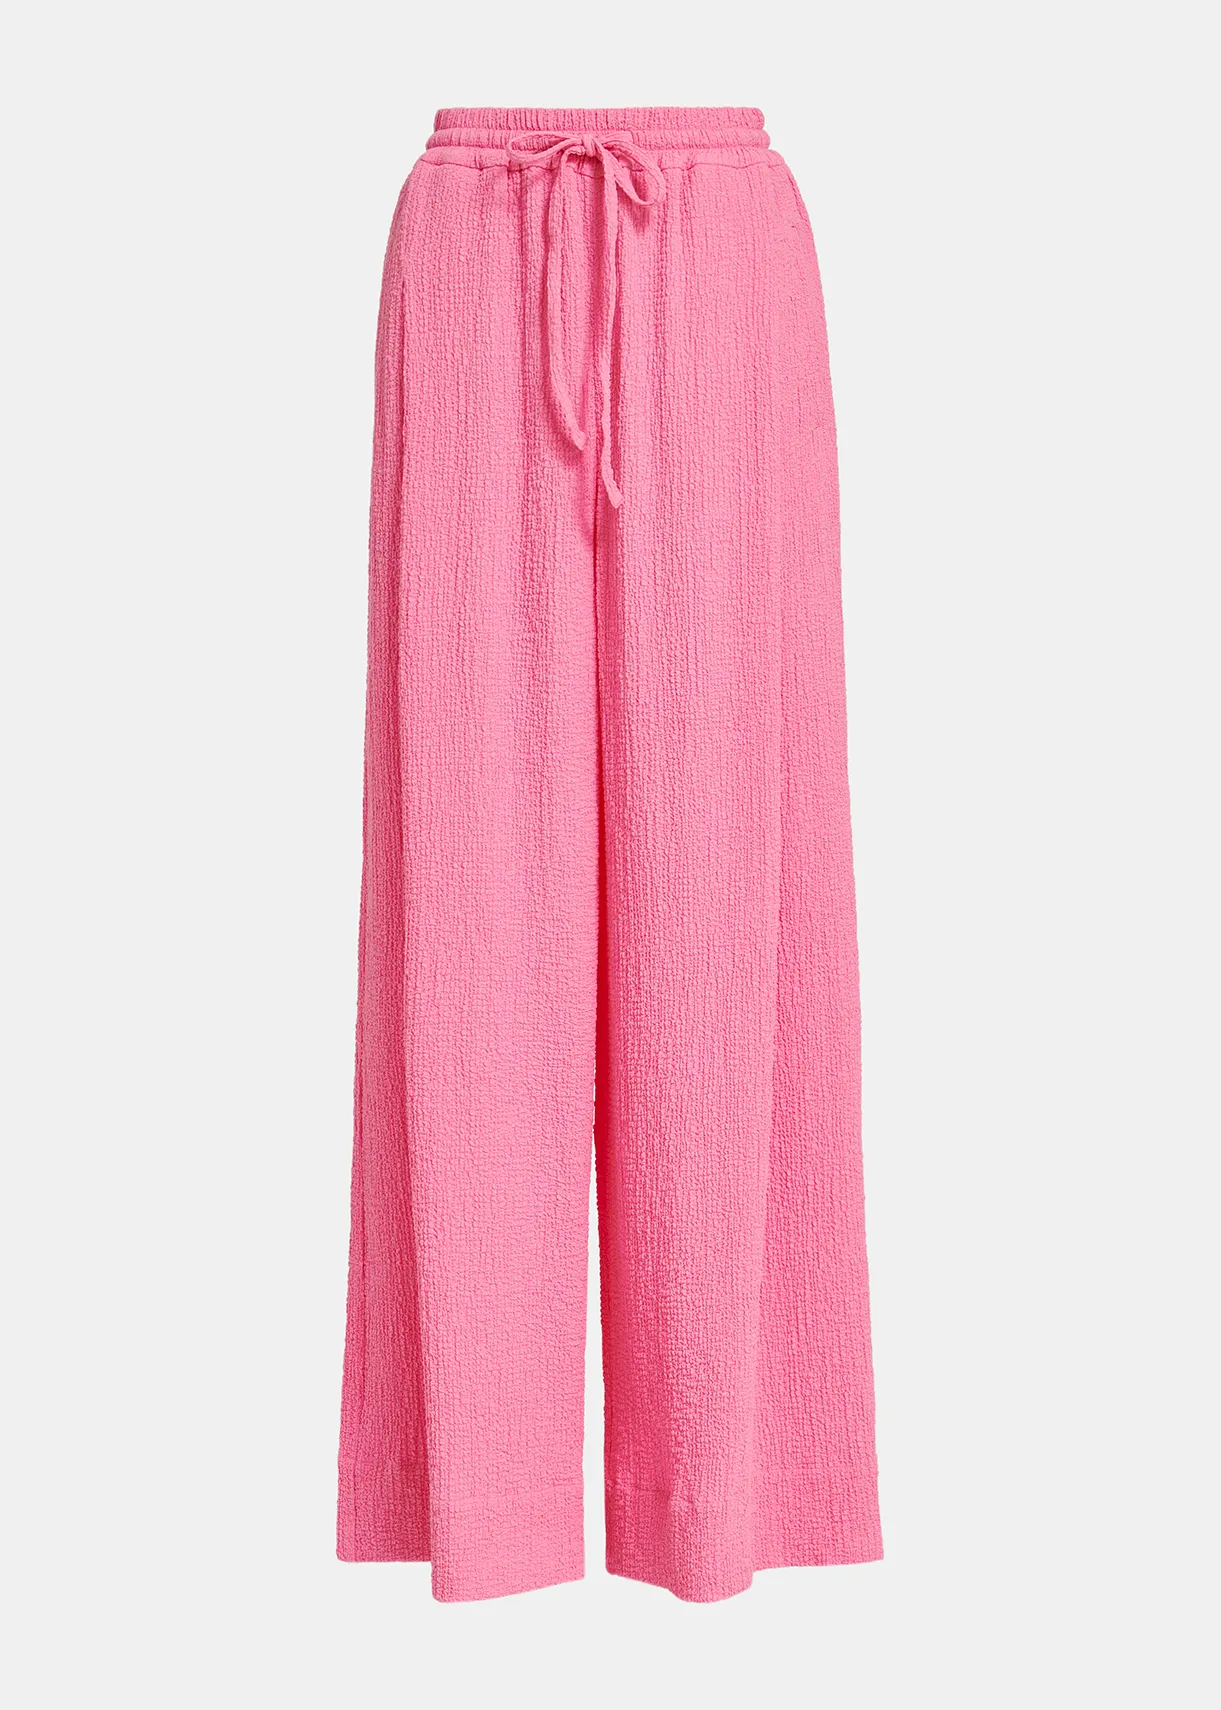 Pantalon large en cloqué rose Antwerp France | Essentiel